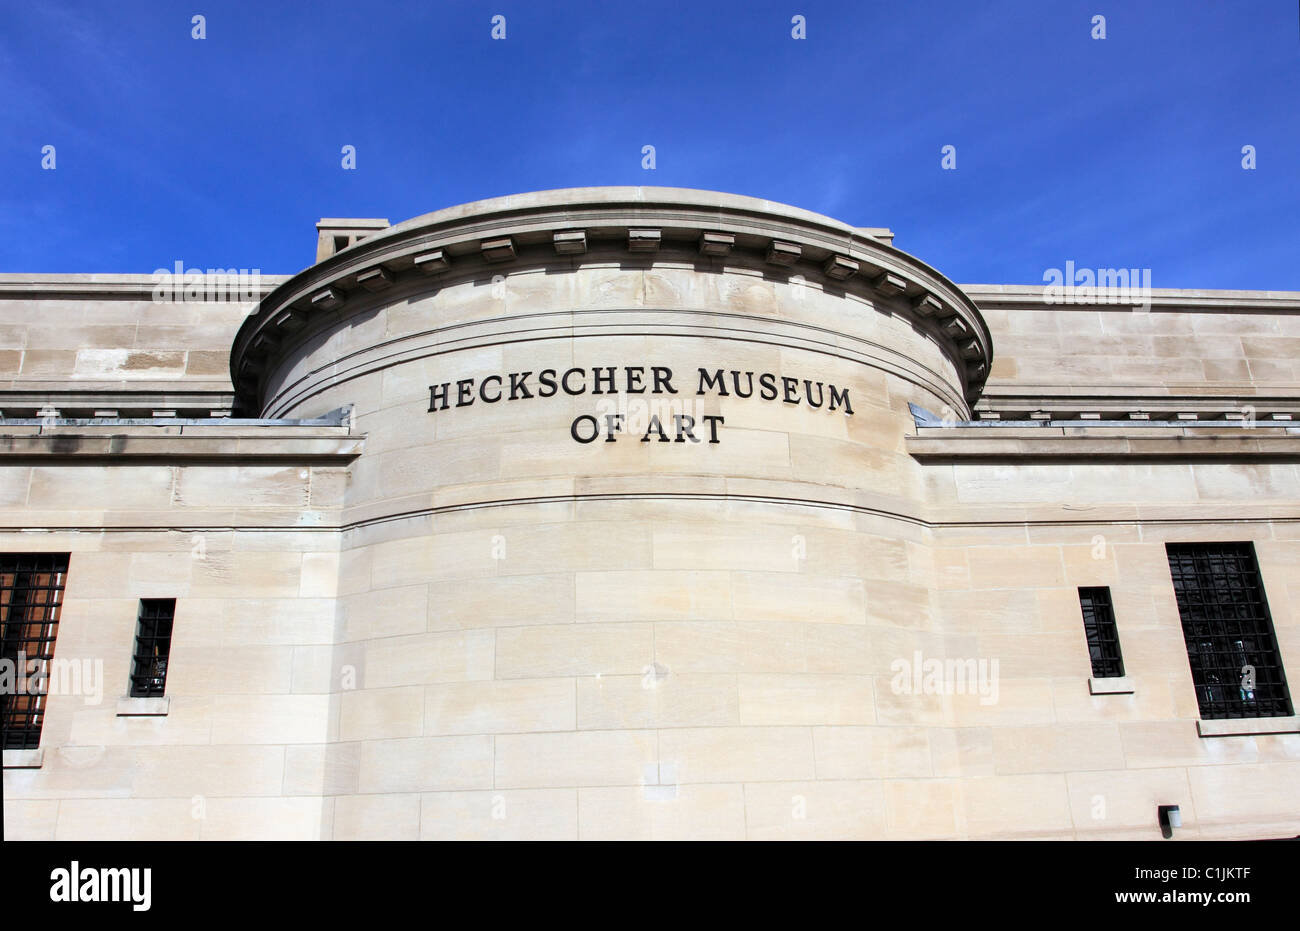 The Heckscher Museum Of Art Photos